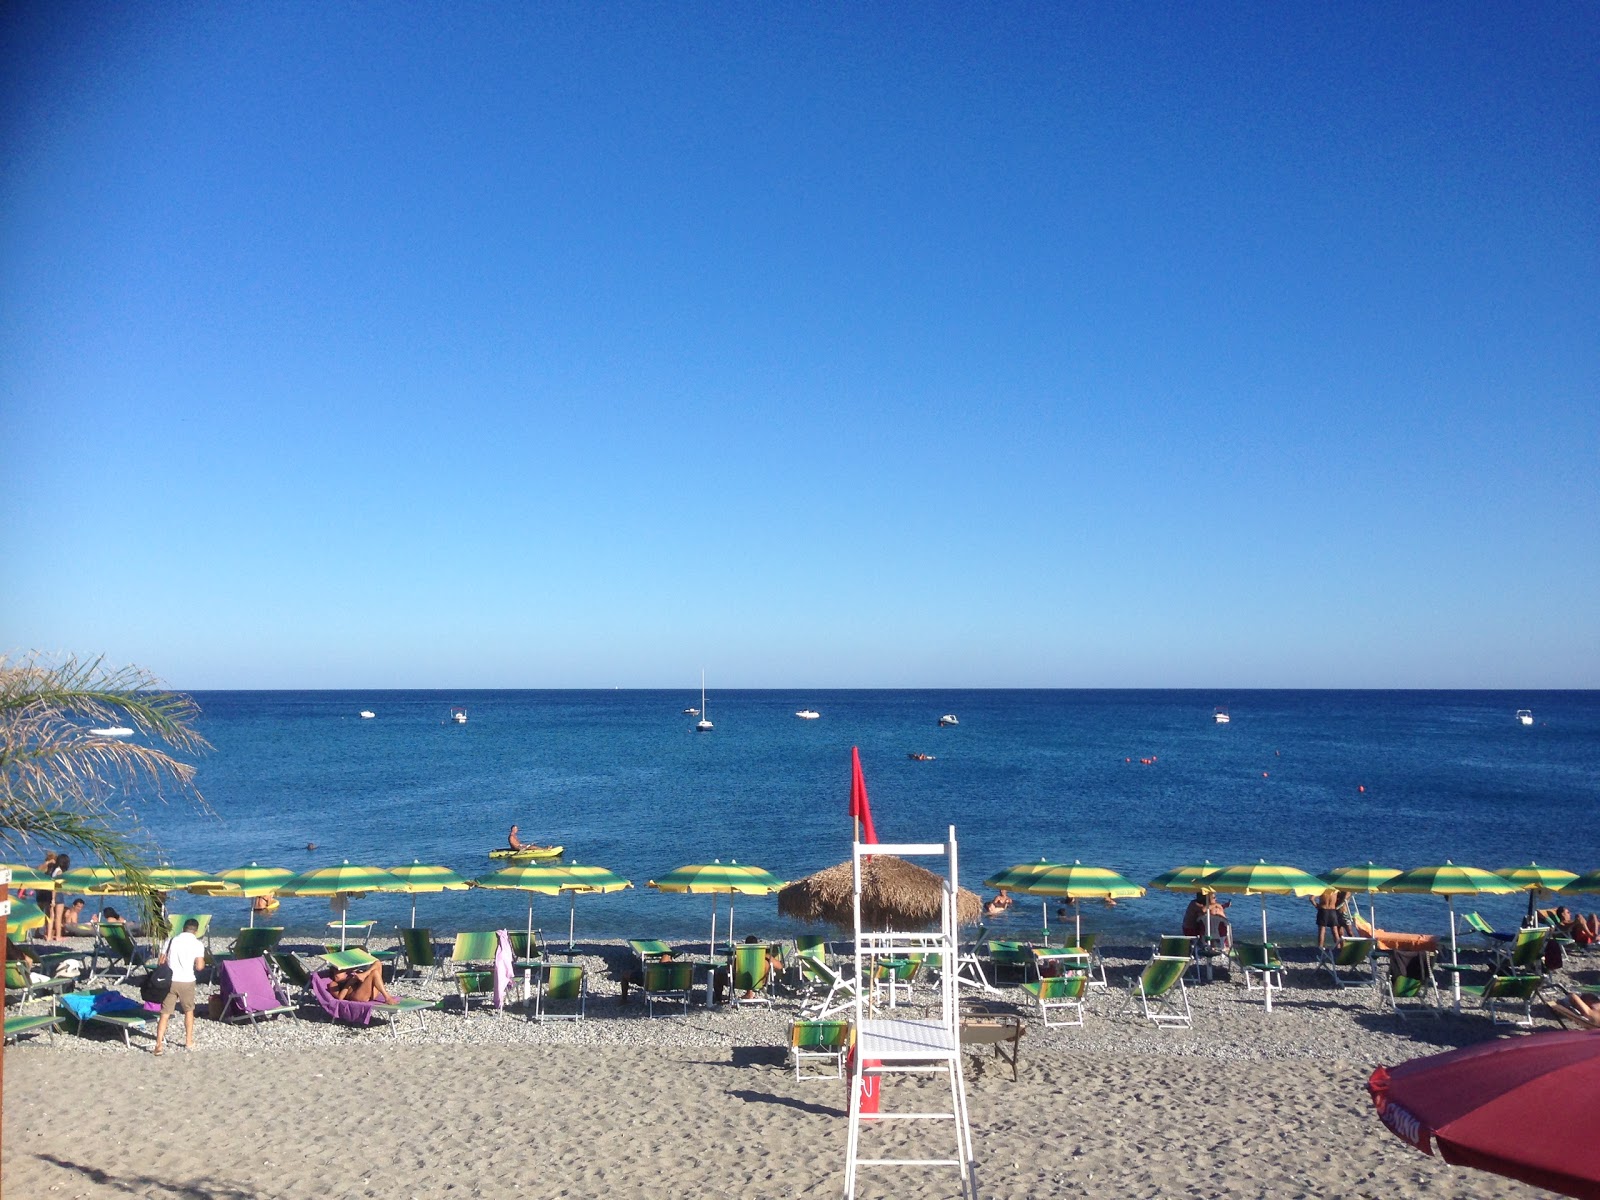 Photo de Bovalino Marina beach - endroit populaire parmi les connaisseurs de la détente